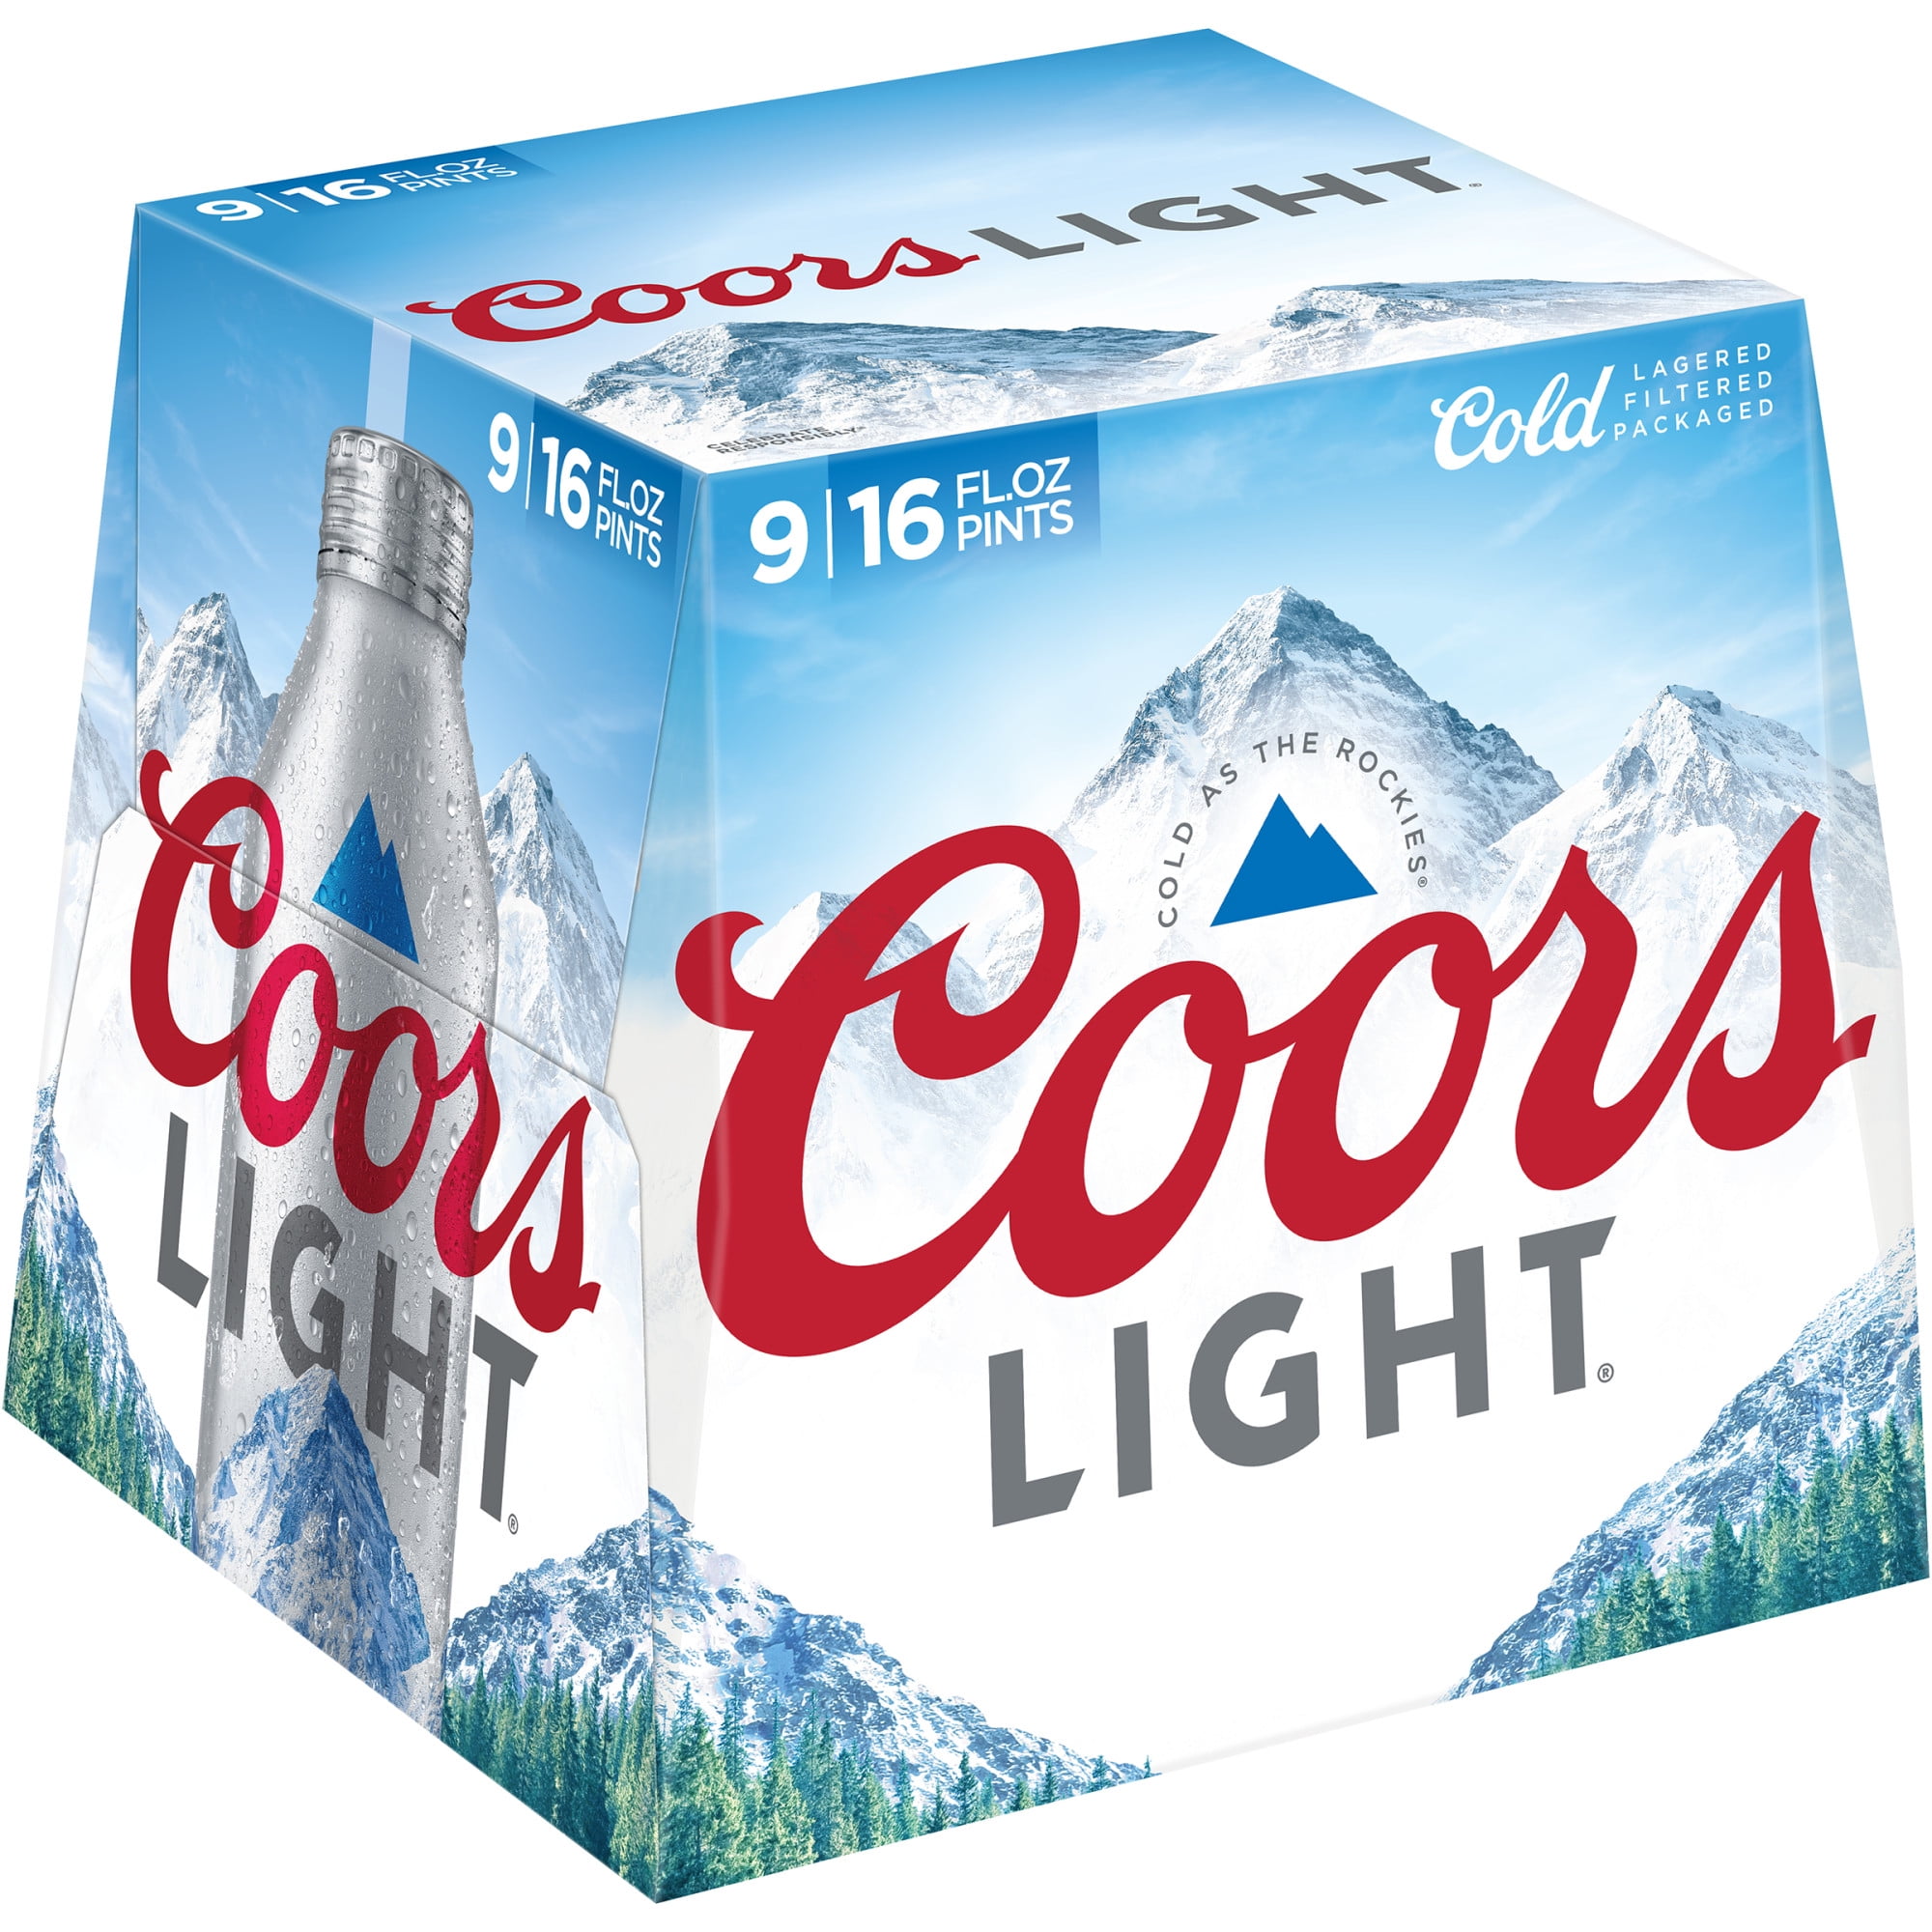 overskydende Hubert Hudson cilia Coors Light Lager Beer, 9 Pack, 16 fl oz Bottles, 4.2% ABV - Walmart.com